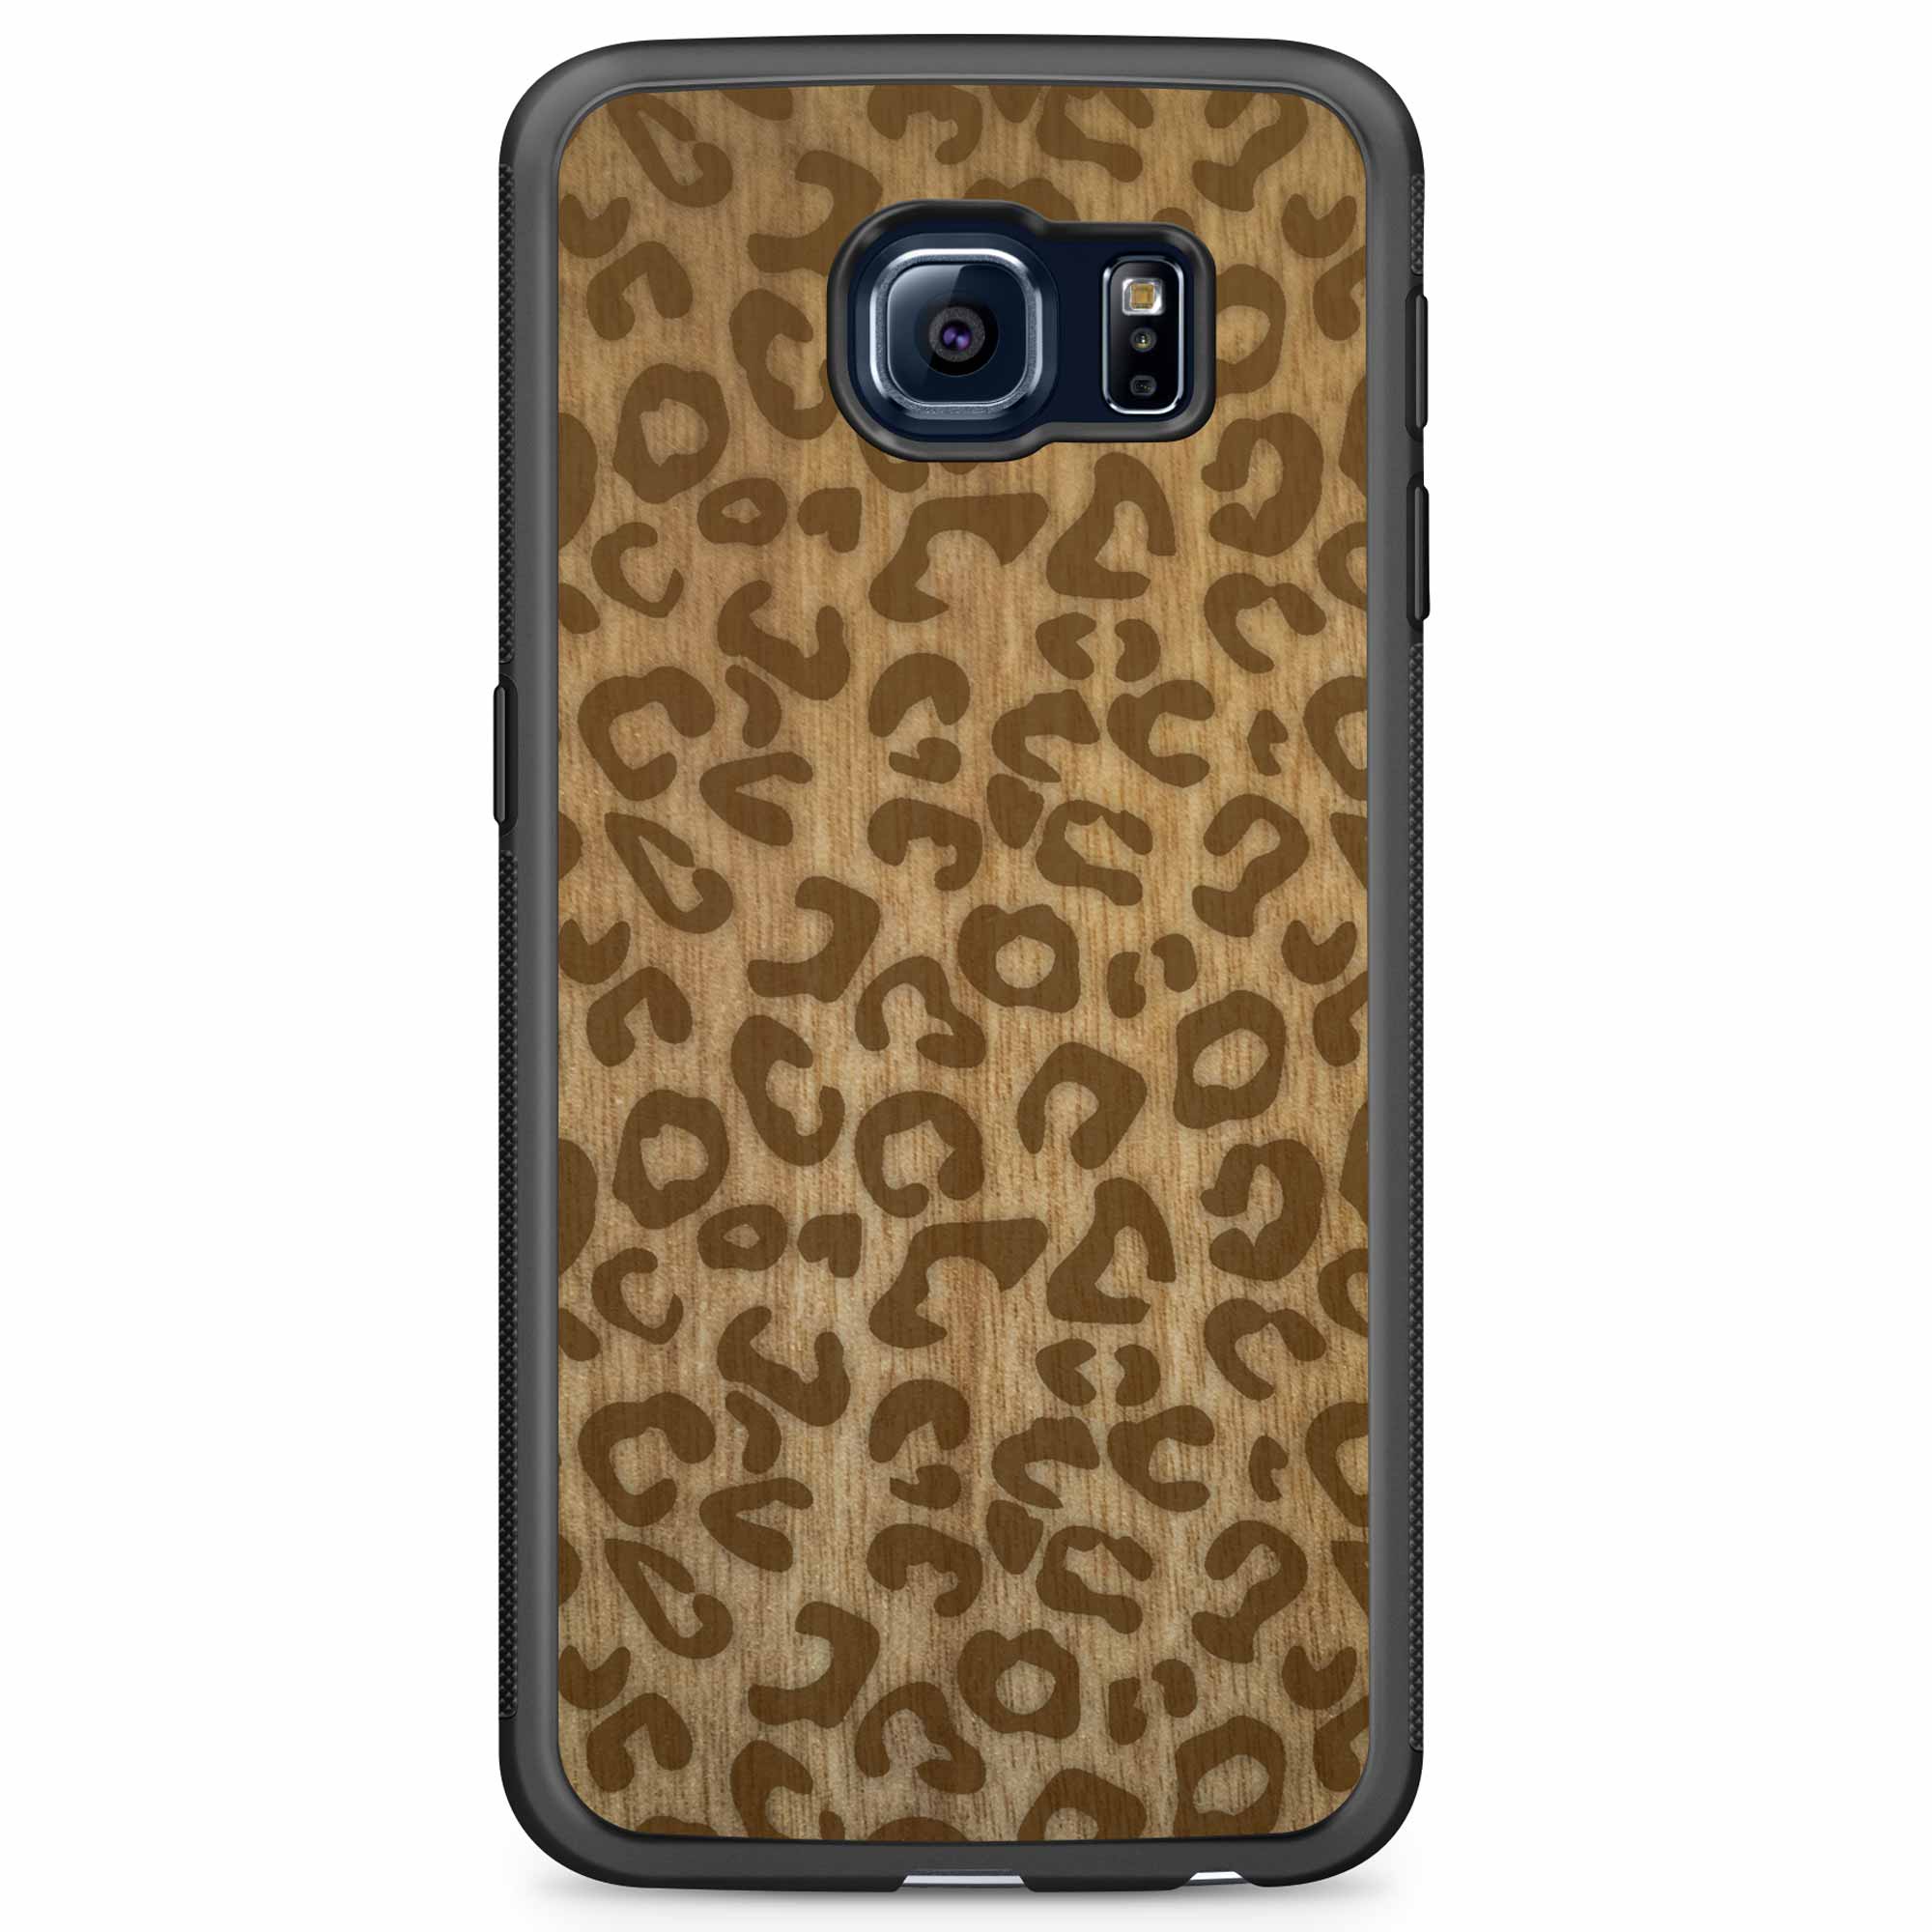 Cheetah Print Samsung S6 Edge Wood Phone Case